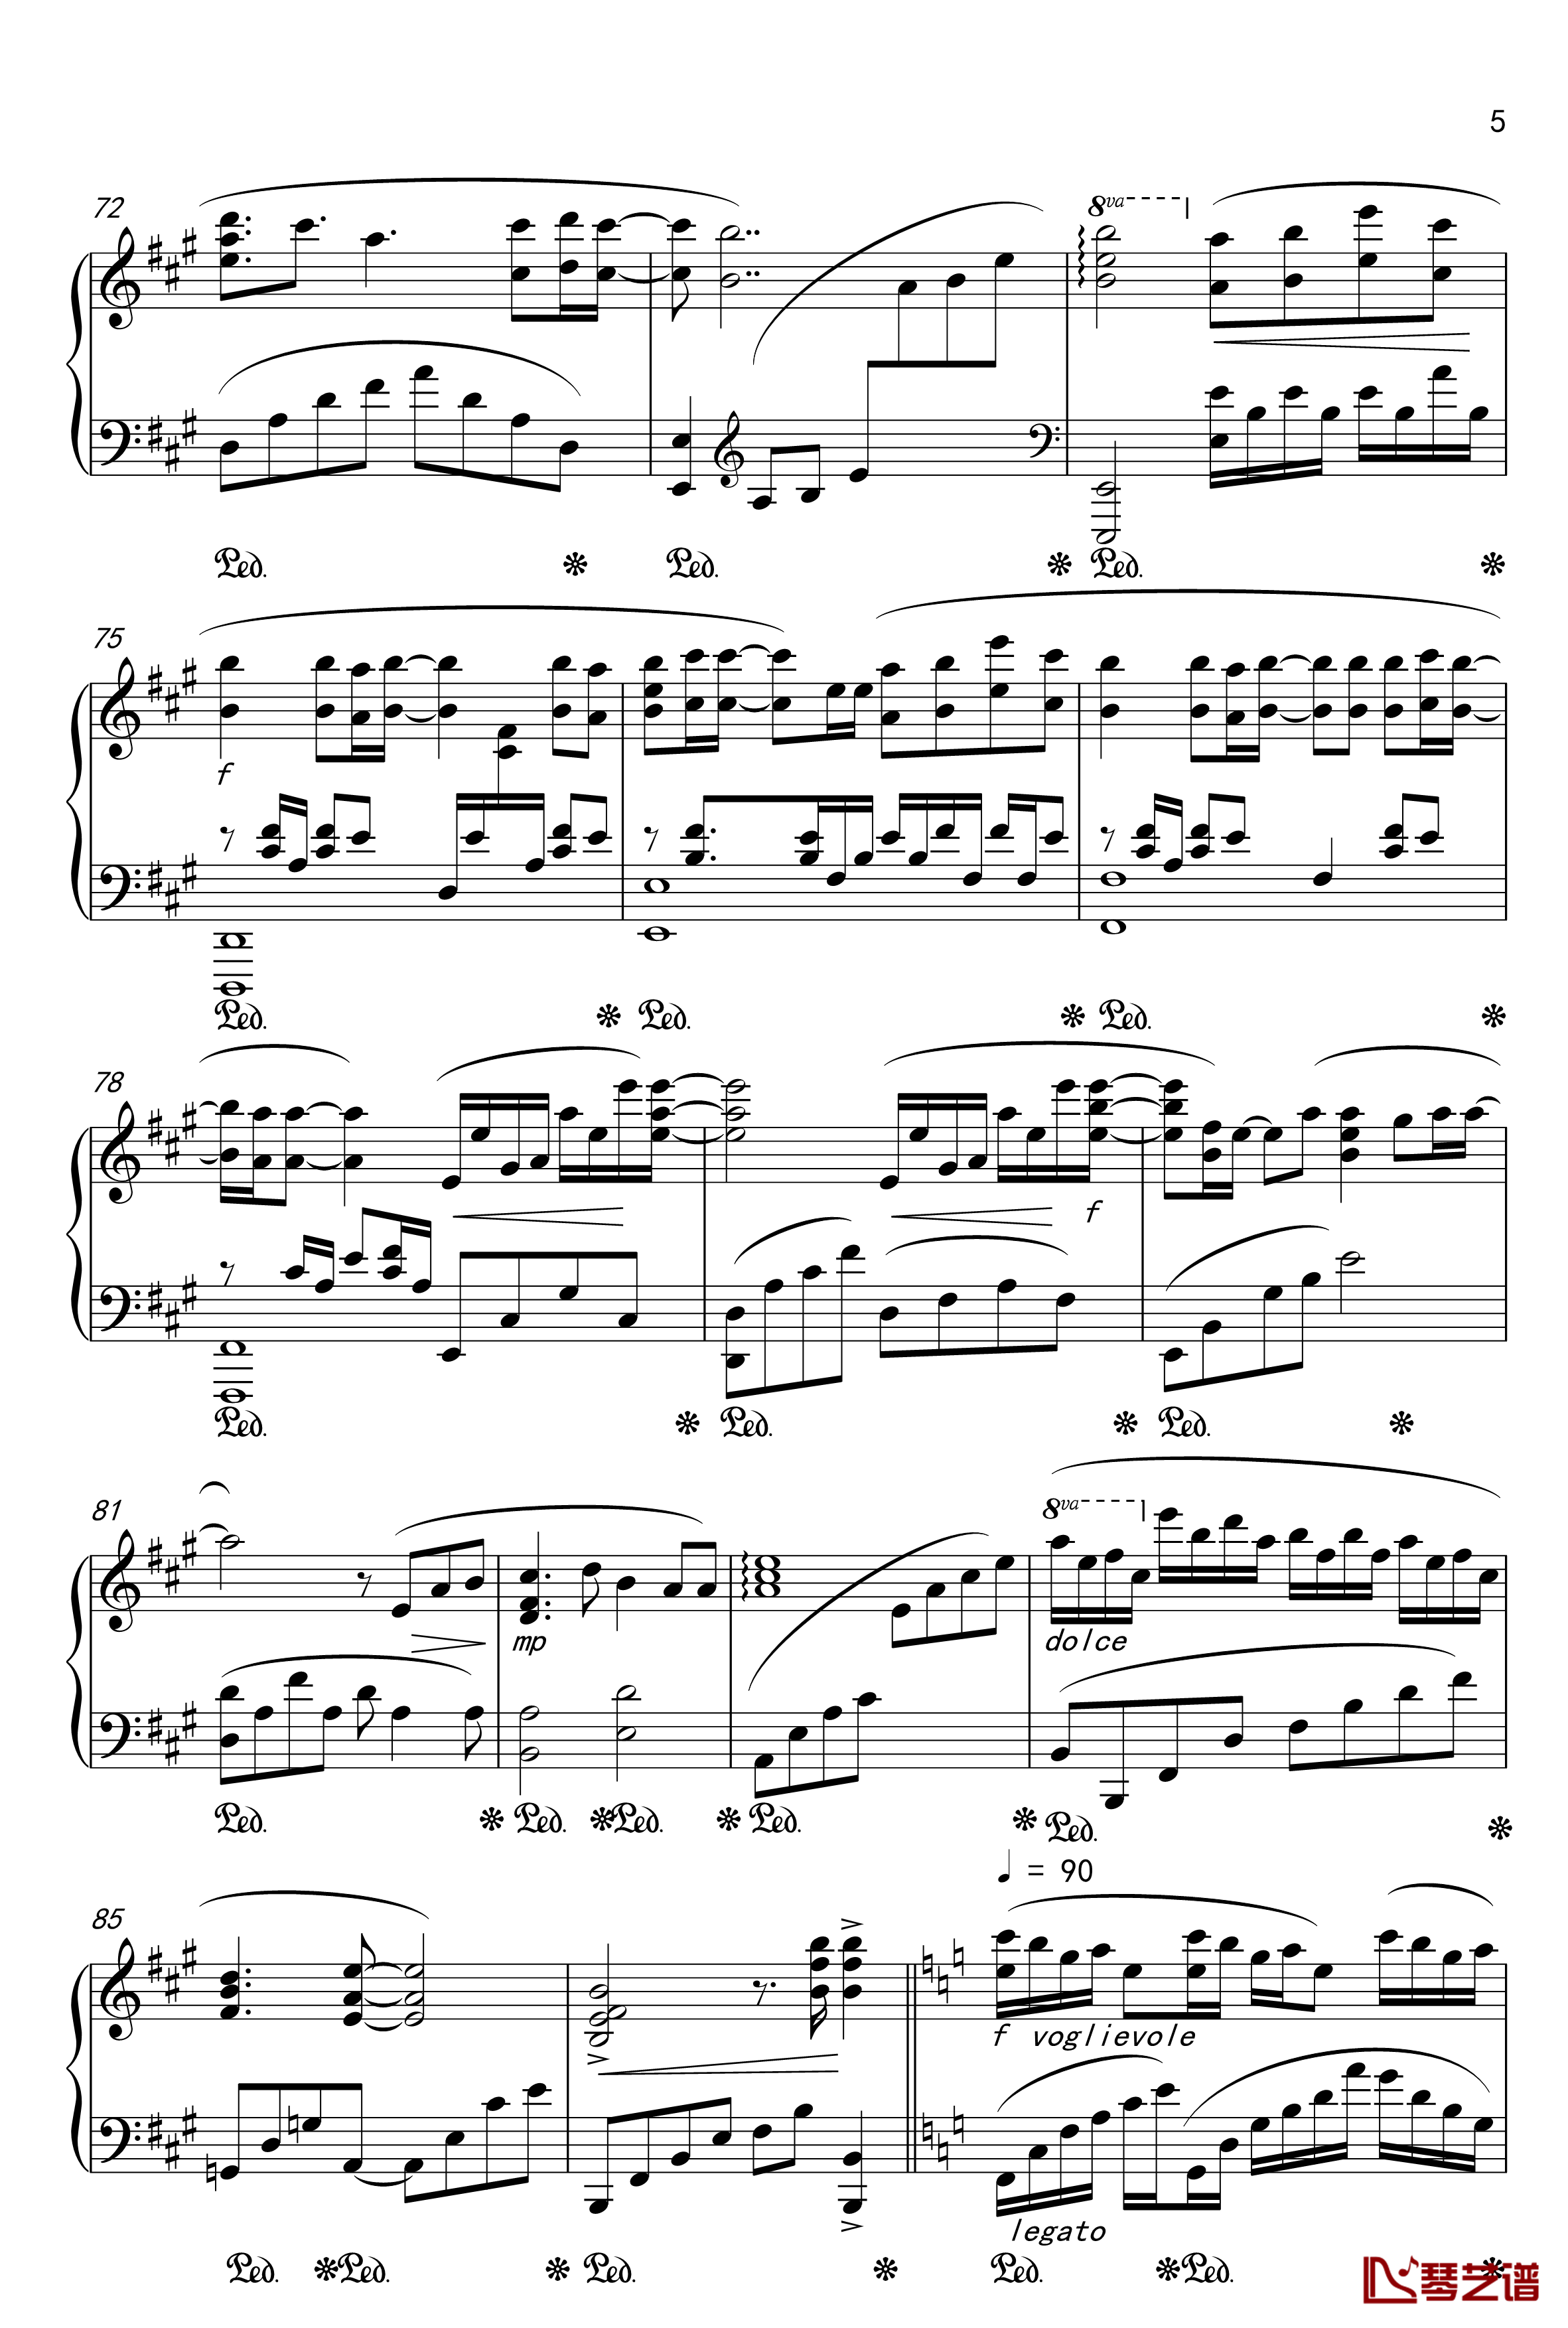 月夜に舞う恋の花-Piano Instrumental-钢琴谱-千の刃涛5